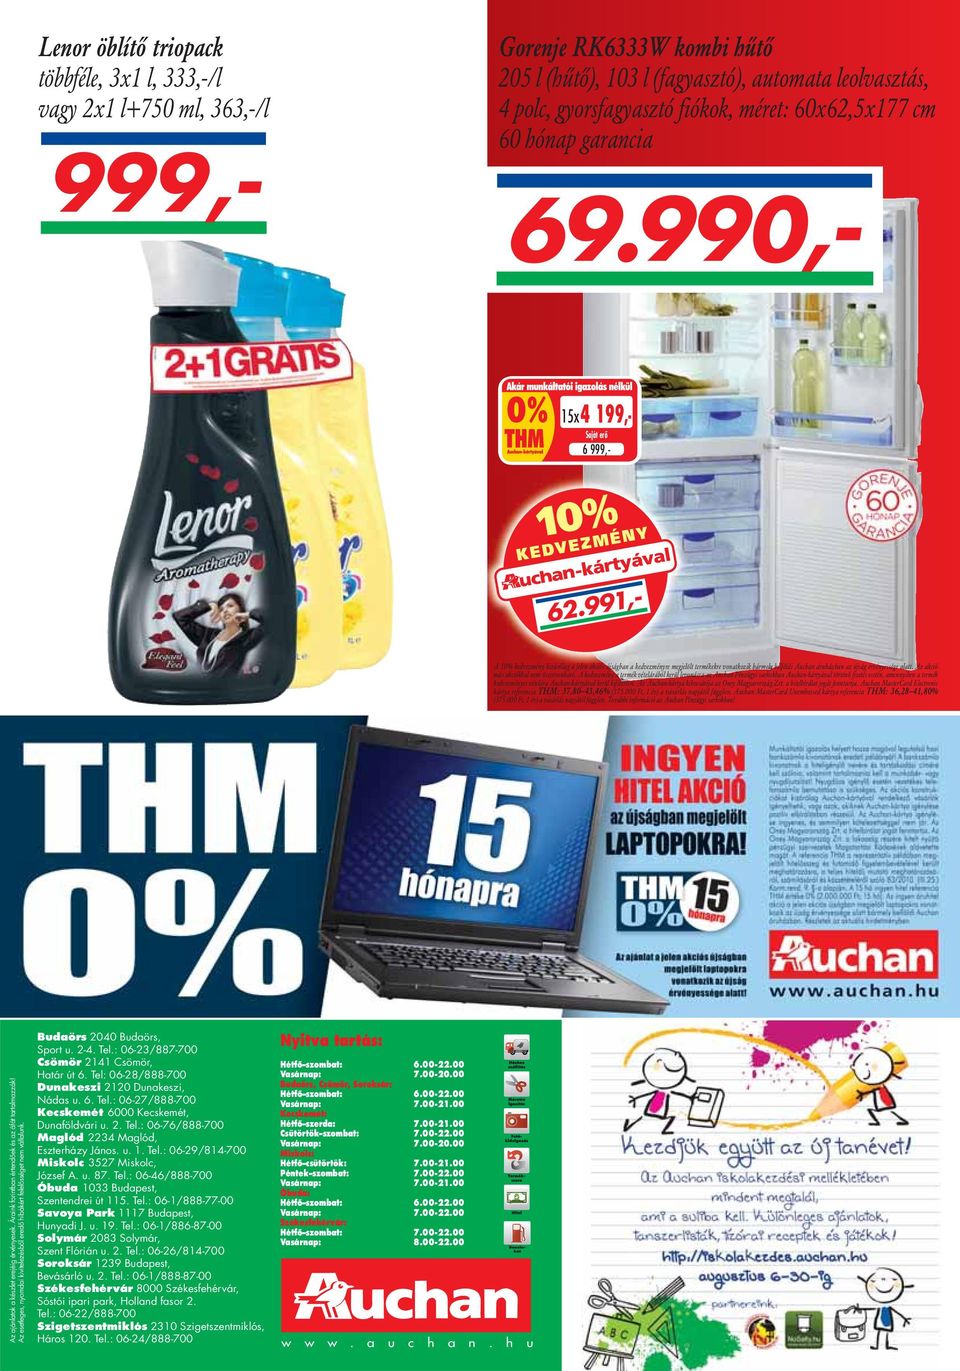 991,- A10%kd kedvezmény kizárólag áól a jl jelen akciós kió újságban áb a kd kedvezményre megjelölt jl termékekre vonatkozik bármely belföldi Auchan áruházban az újság érvényessége alatt.